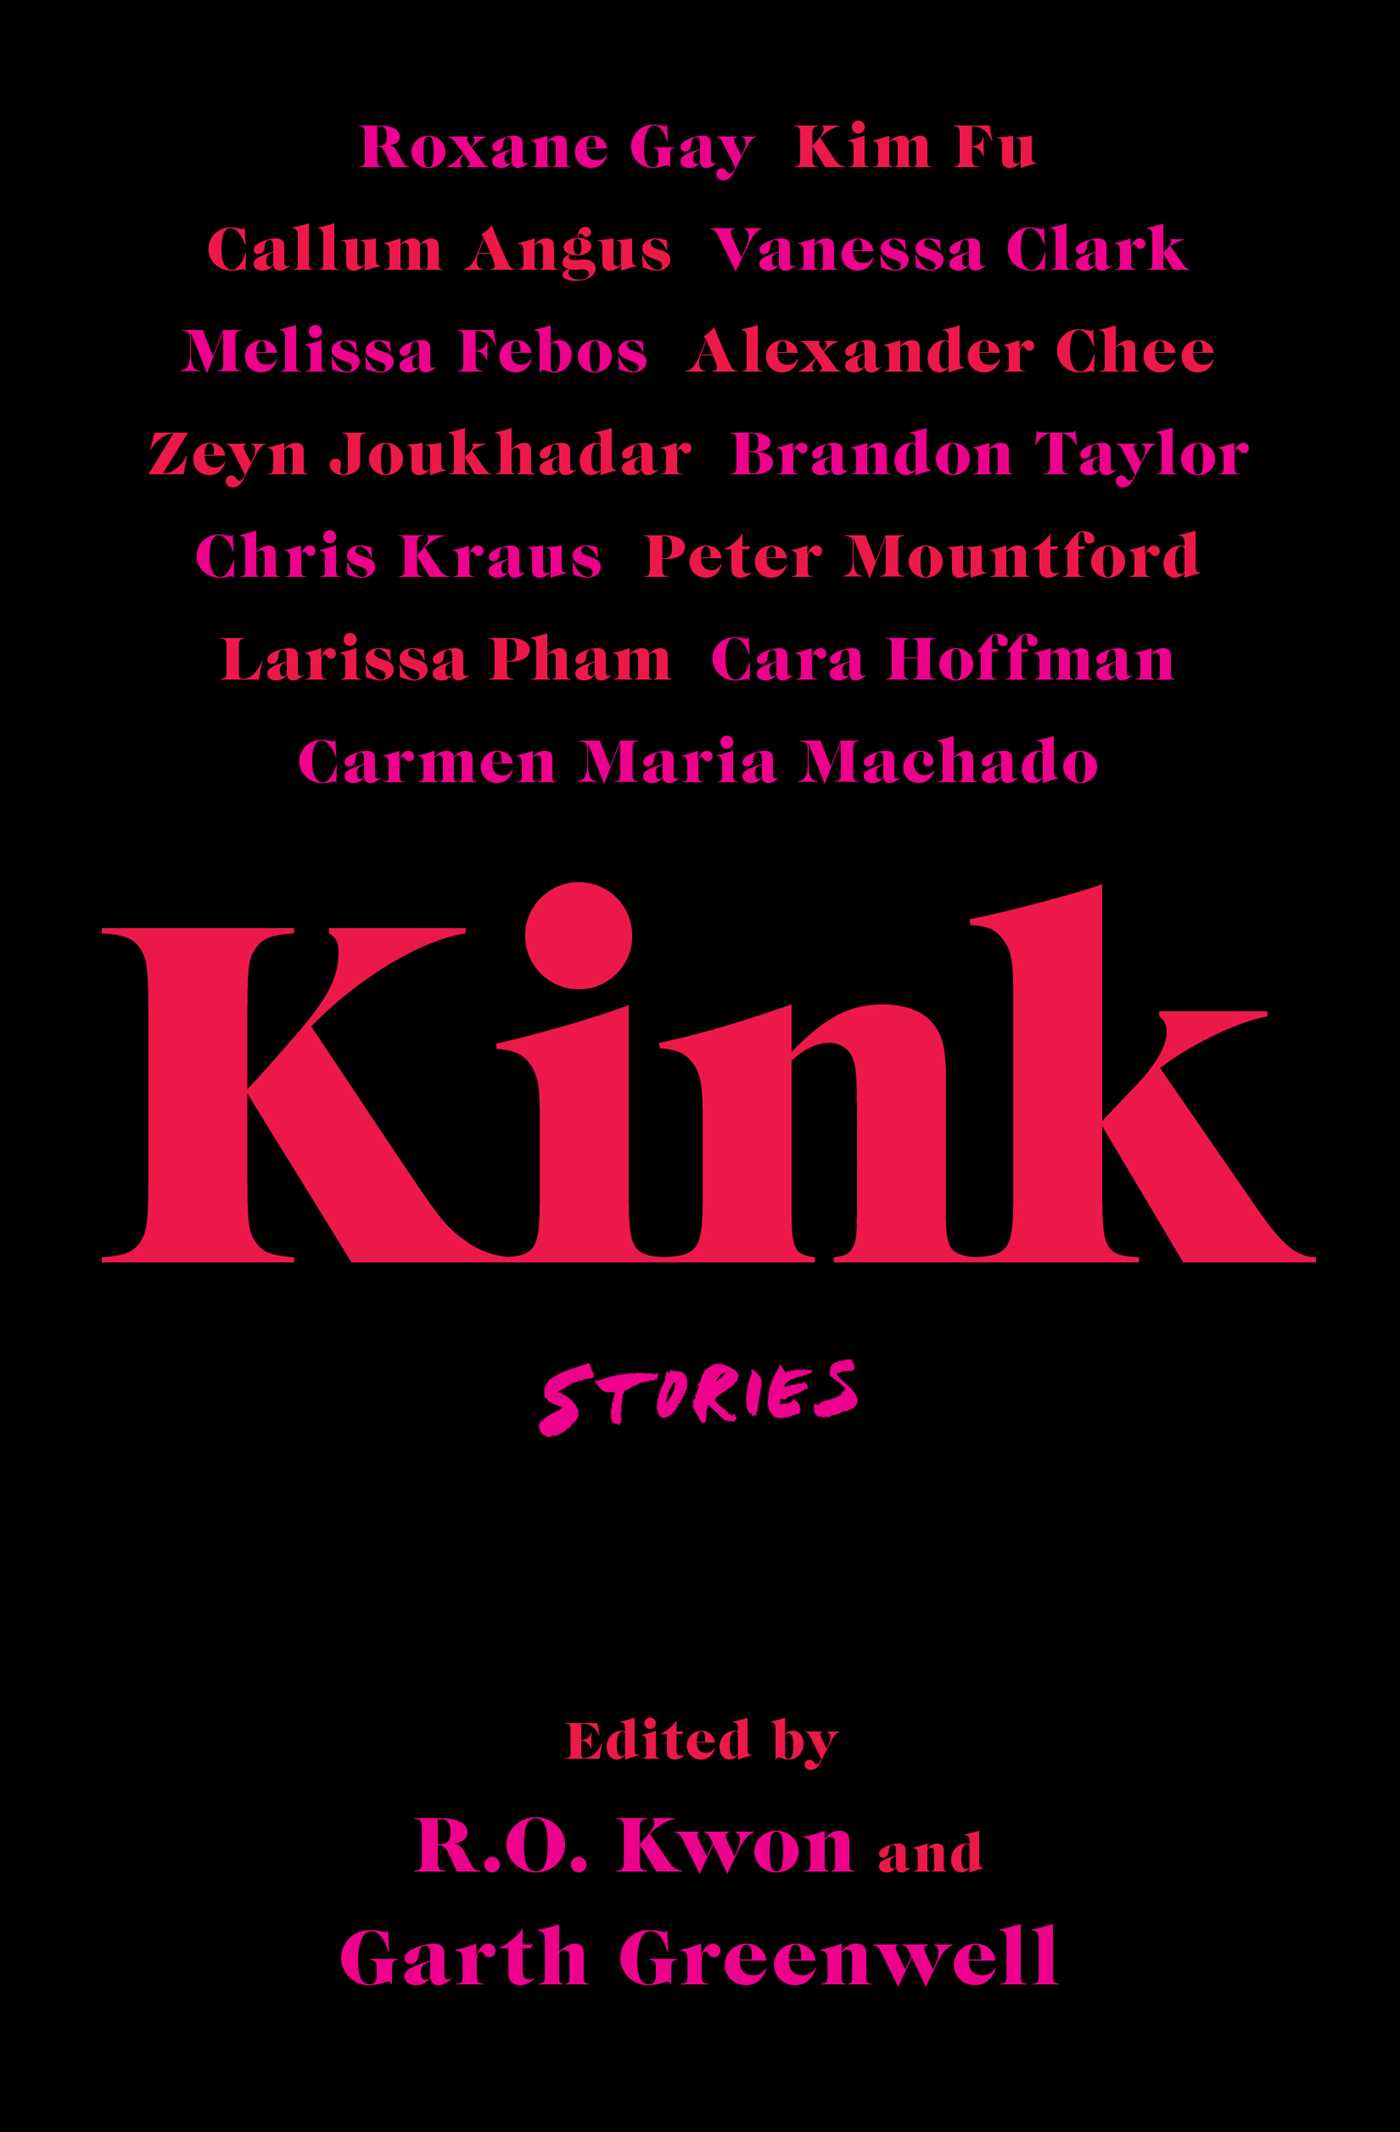 [EPUB] Kink: Stories by R.O. Kwon  (Editor) ,  Garth Greenwell  (Editor) ,  Melissa Febos  (Contributor) ,  Alexander Chee  (Contributor) ,  Larissa Pham  (Contributor) ,  Callum Angus  (Contributor) ,  Brandon Taylor